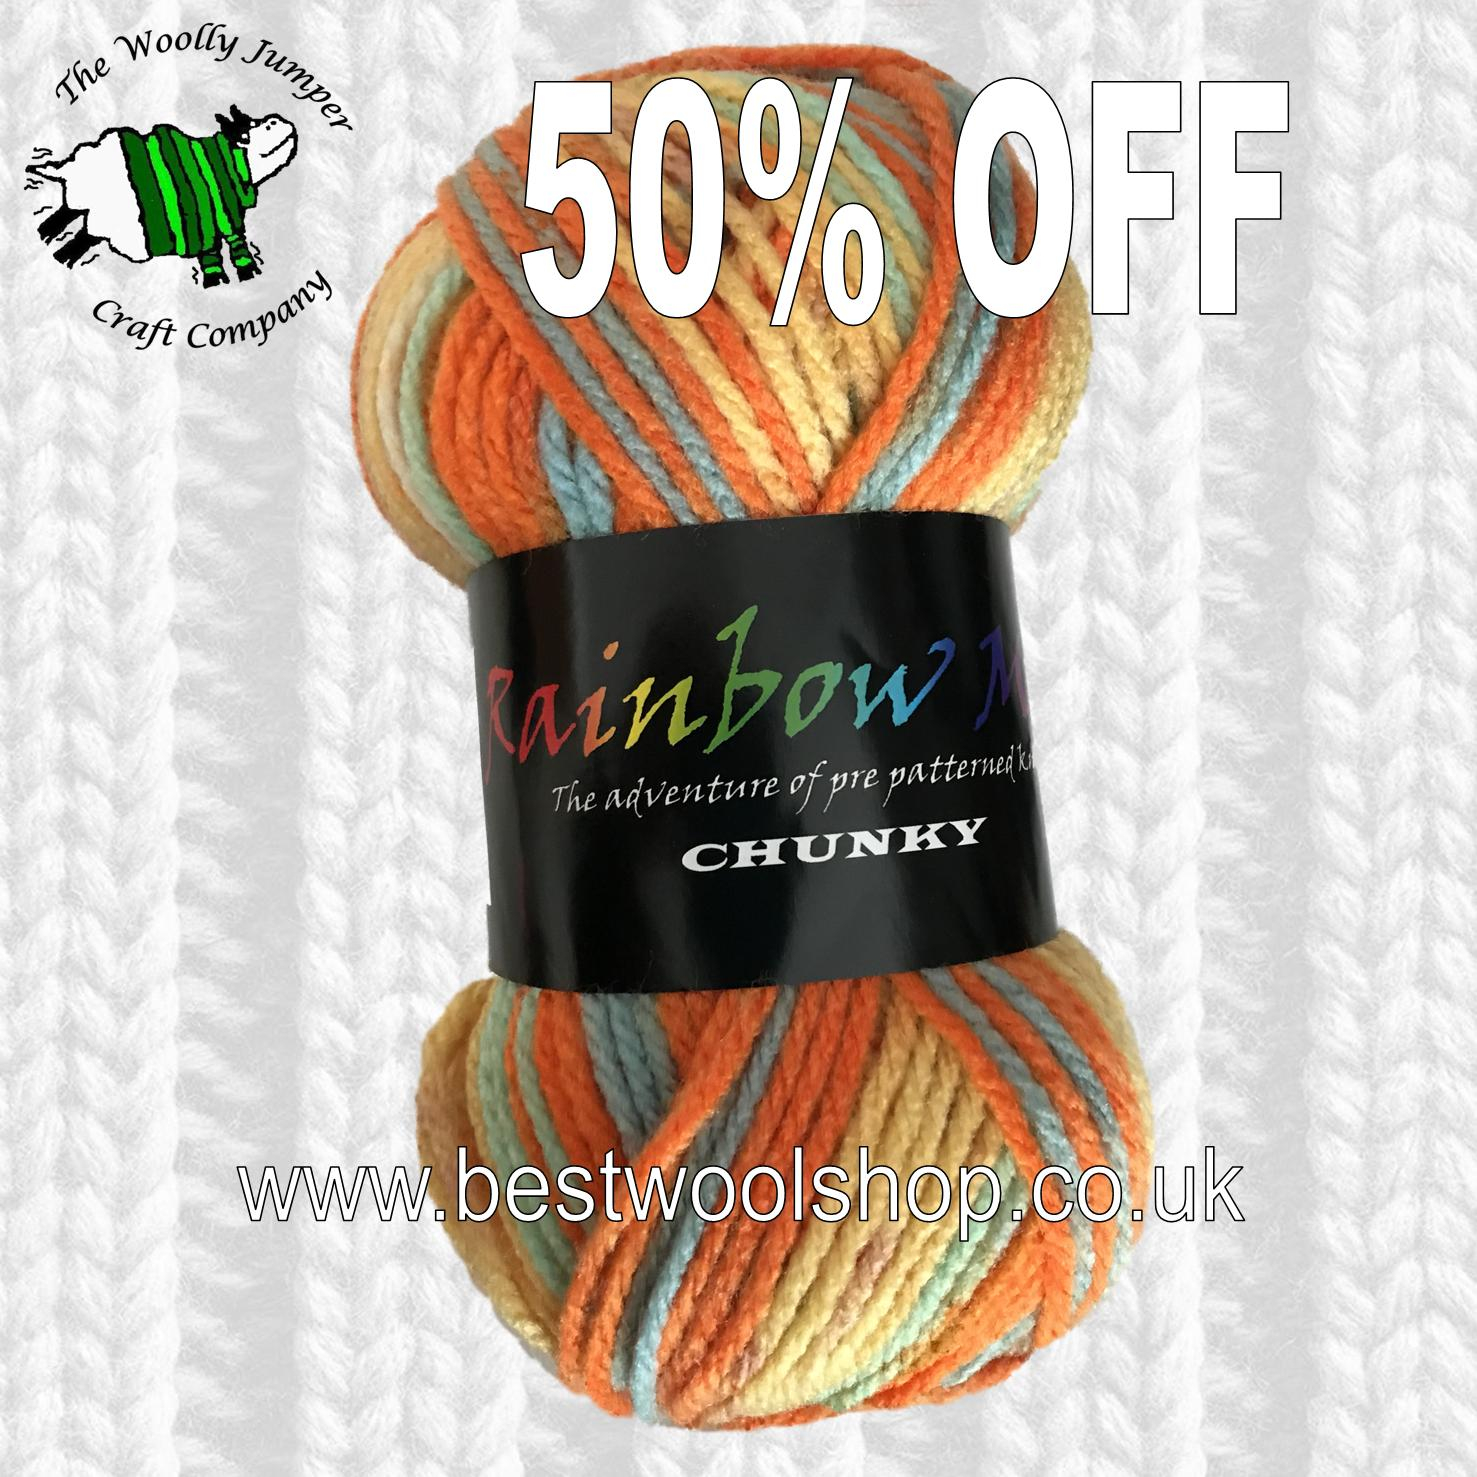 Fashionable Knitting Patterns Uk 346 Bright Mix Creative Yarns Rainbow Multi Chunky Knitting Yarn 100g 12 Price